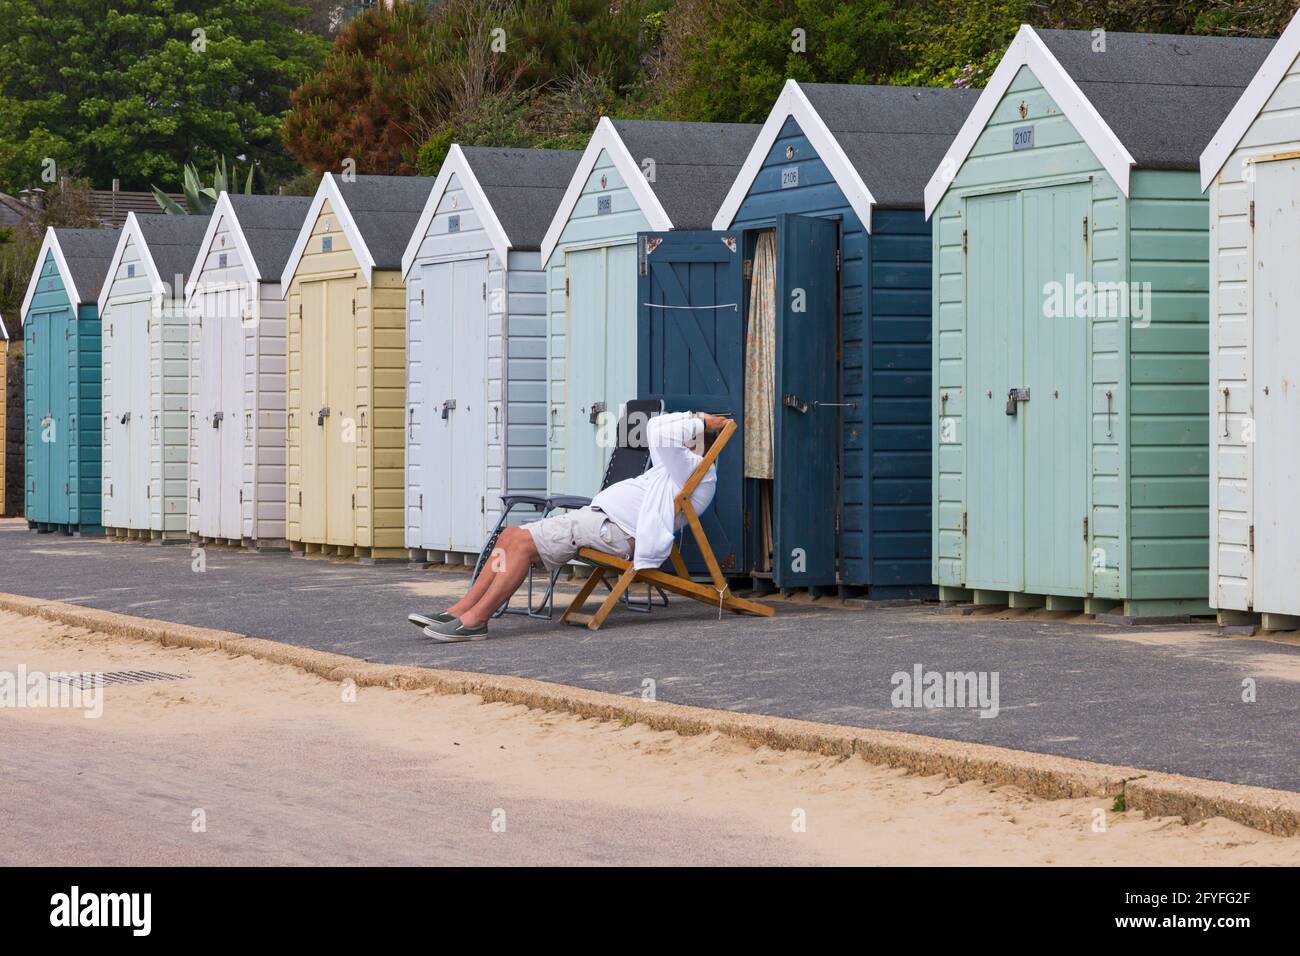 Bournemouth, Dorset, Royaume-Uni. 28 mai 2021. Météo au Royaume-Uni : soleil brumeux et chaleureux sur les plages de Bournemouth, tandis que les gens se dirigent vers le bord de mer pour l'air frais, l'exercice et profiter du soleil. Bournemouth se prépare à une infux de visiteurs au cours du long week-end prochain des vacances en banque, car de plus en plus de gens prennent des vacances en raison des restrictions sur les voyages à l'étranger en raison de Covid. Crédit : Carolyn Jenkins/Alay Live News Banque D'Images